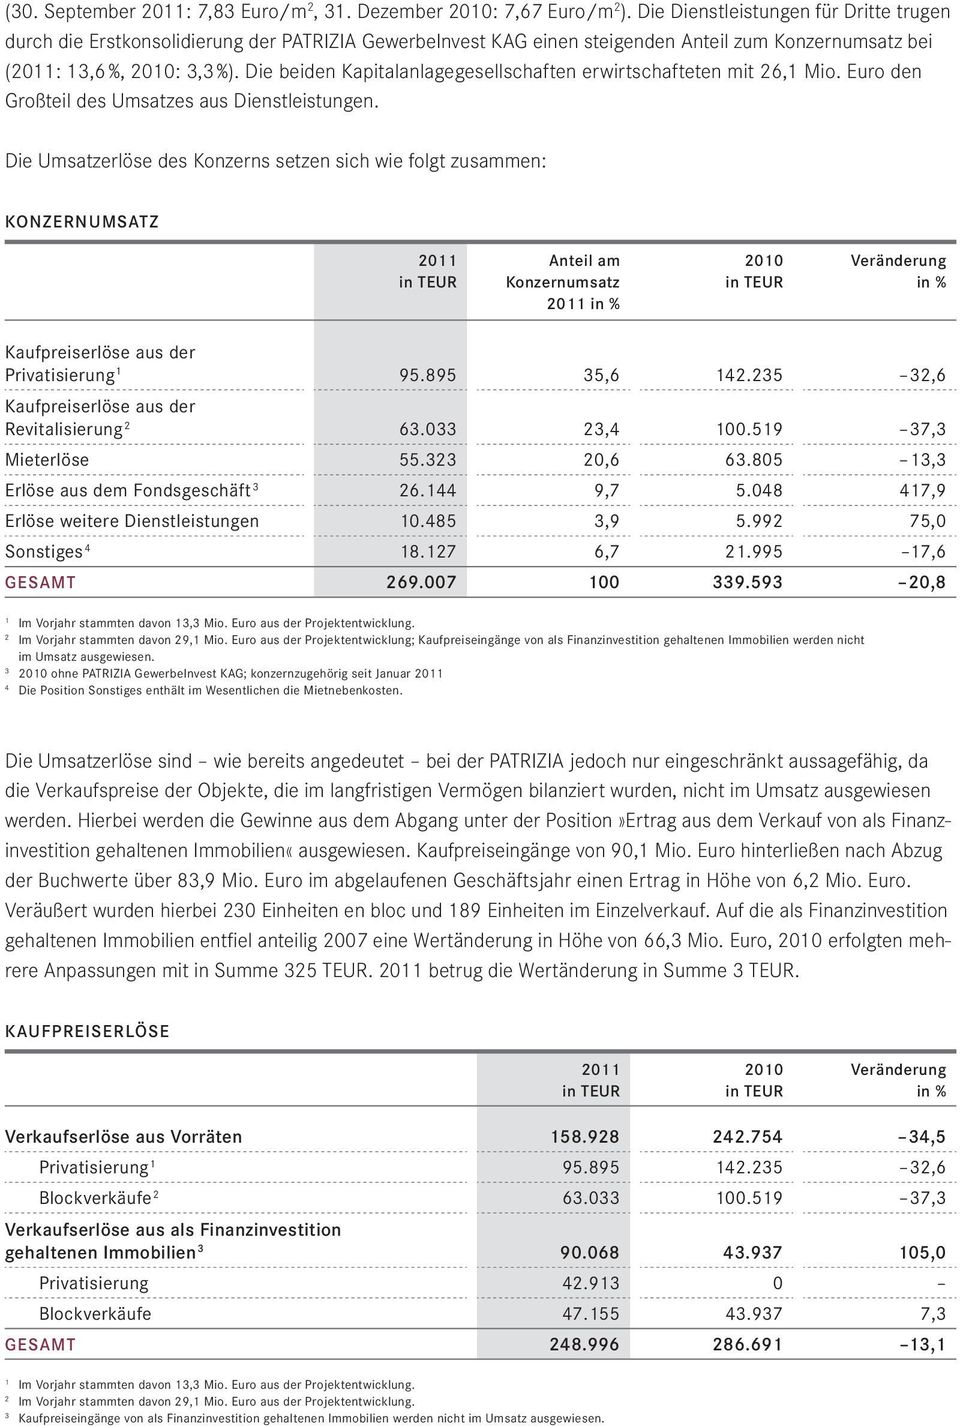 Die Dienstleistungen für Dritte trugen durch die Erstkonsolidierung der PATRIZIA GewerbeInvest KAG einen steigenden Anteil zum Konzernumsatz bei (2011: 13,6 %, 2010: 3,3 %).